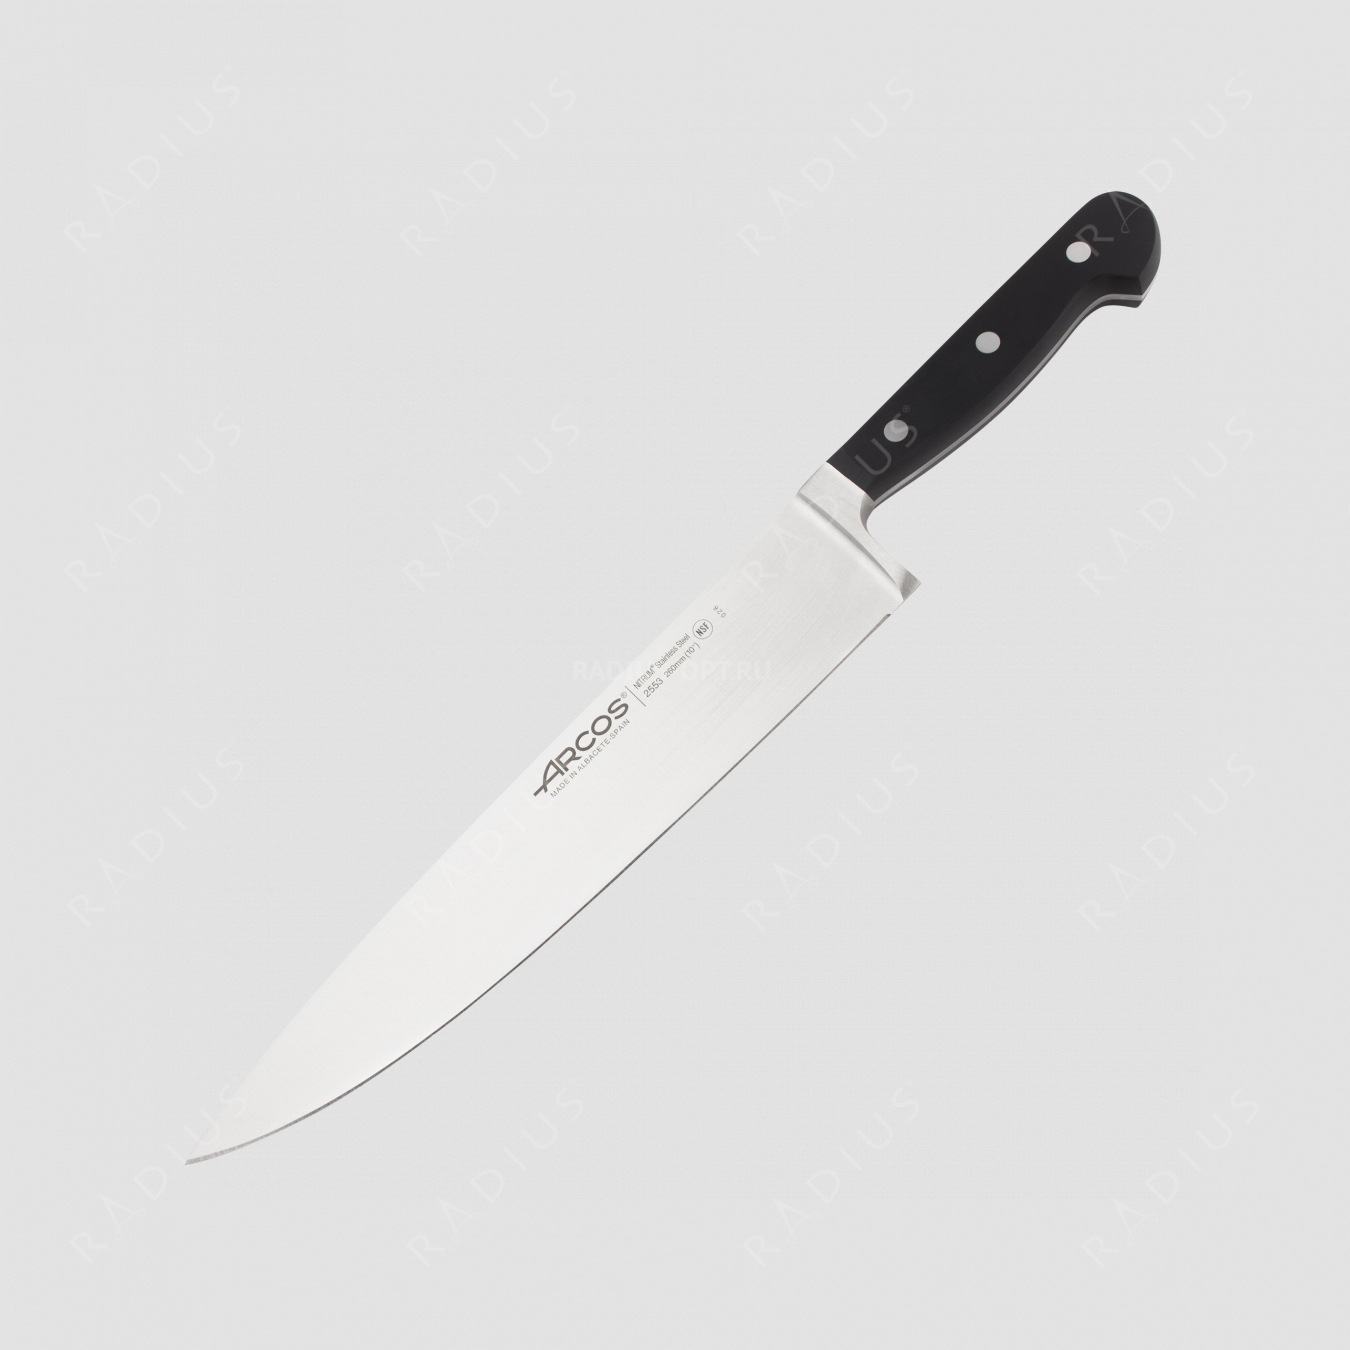 Профессиональный поварской кухонный нож 26 см, серия Clasica, ARCOS, Испания